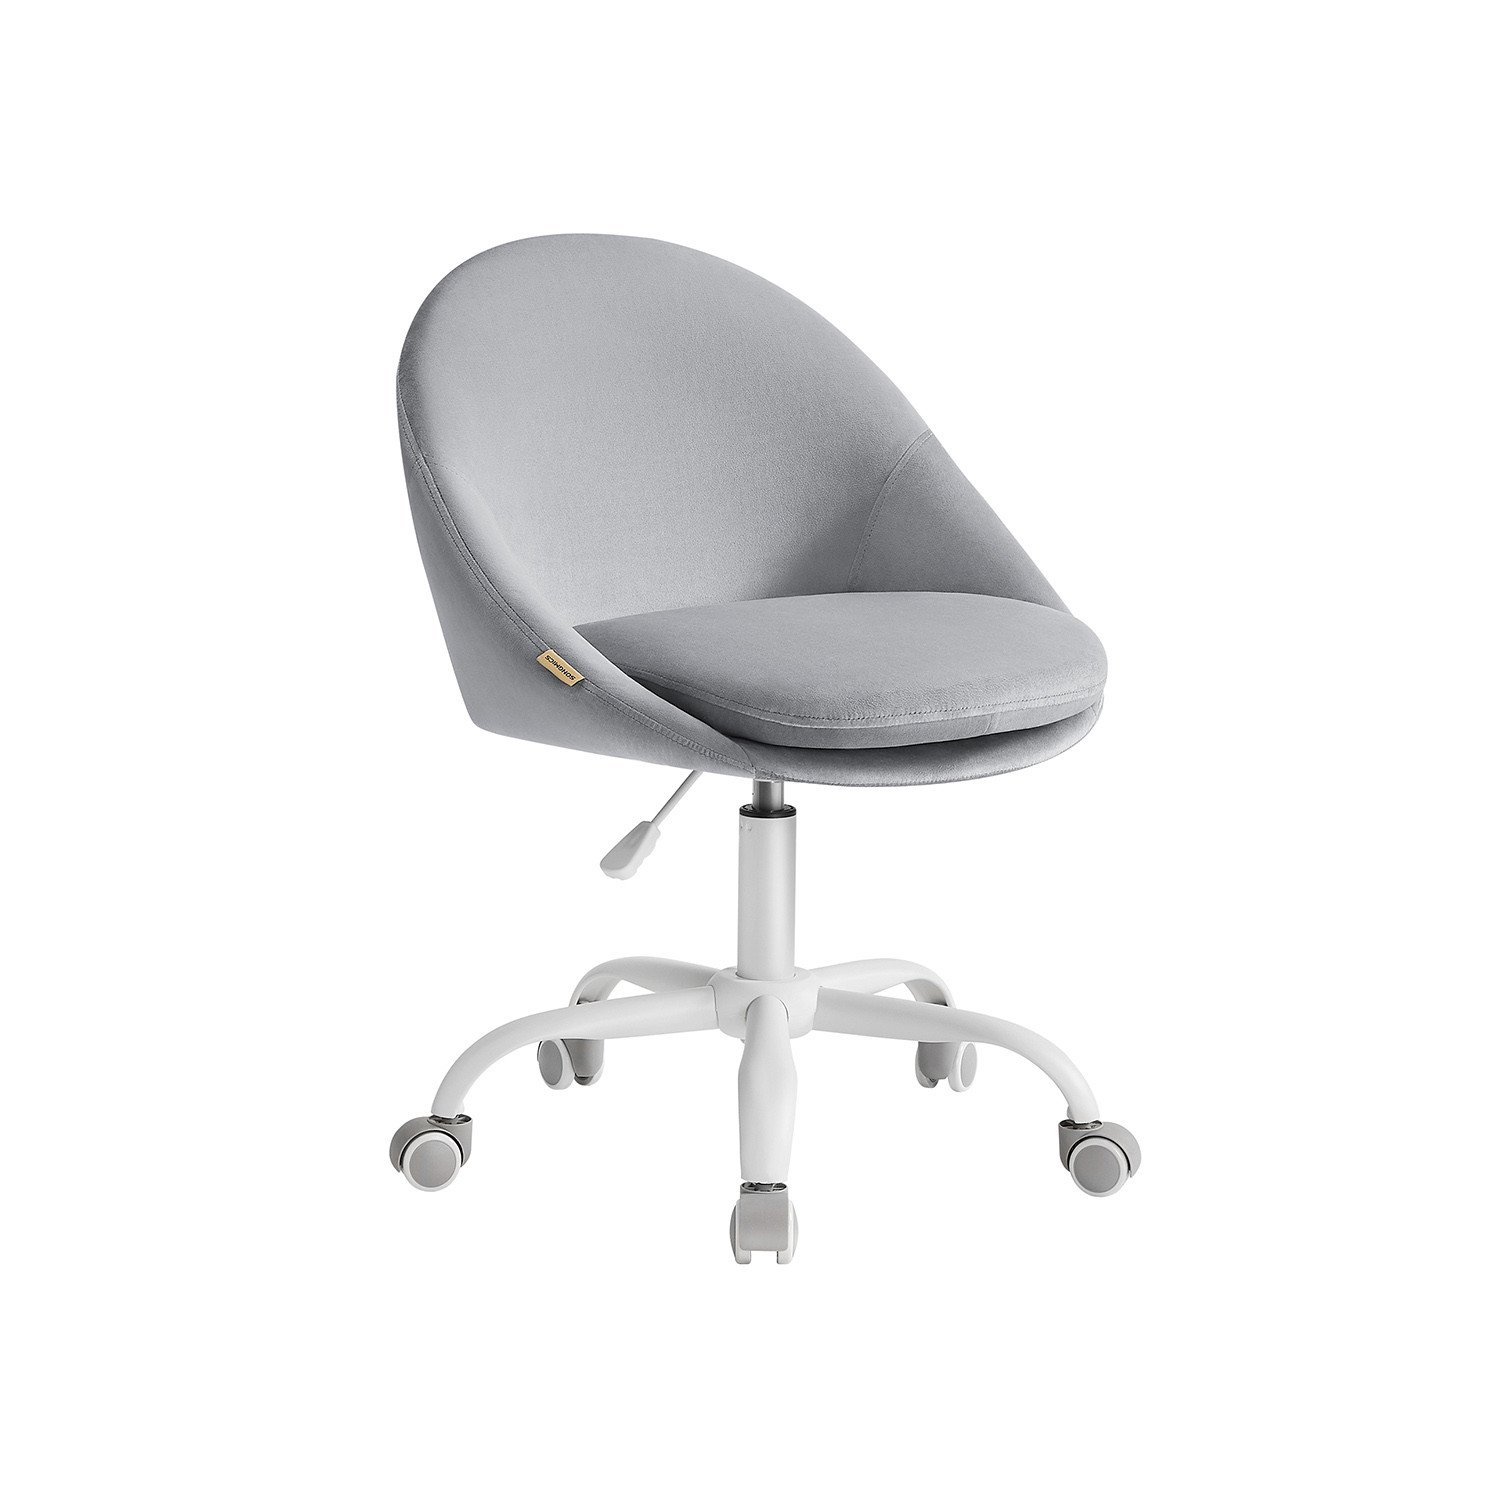 Kancelárska stolička OBG020G04